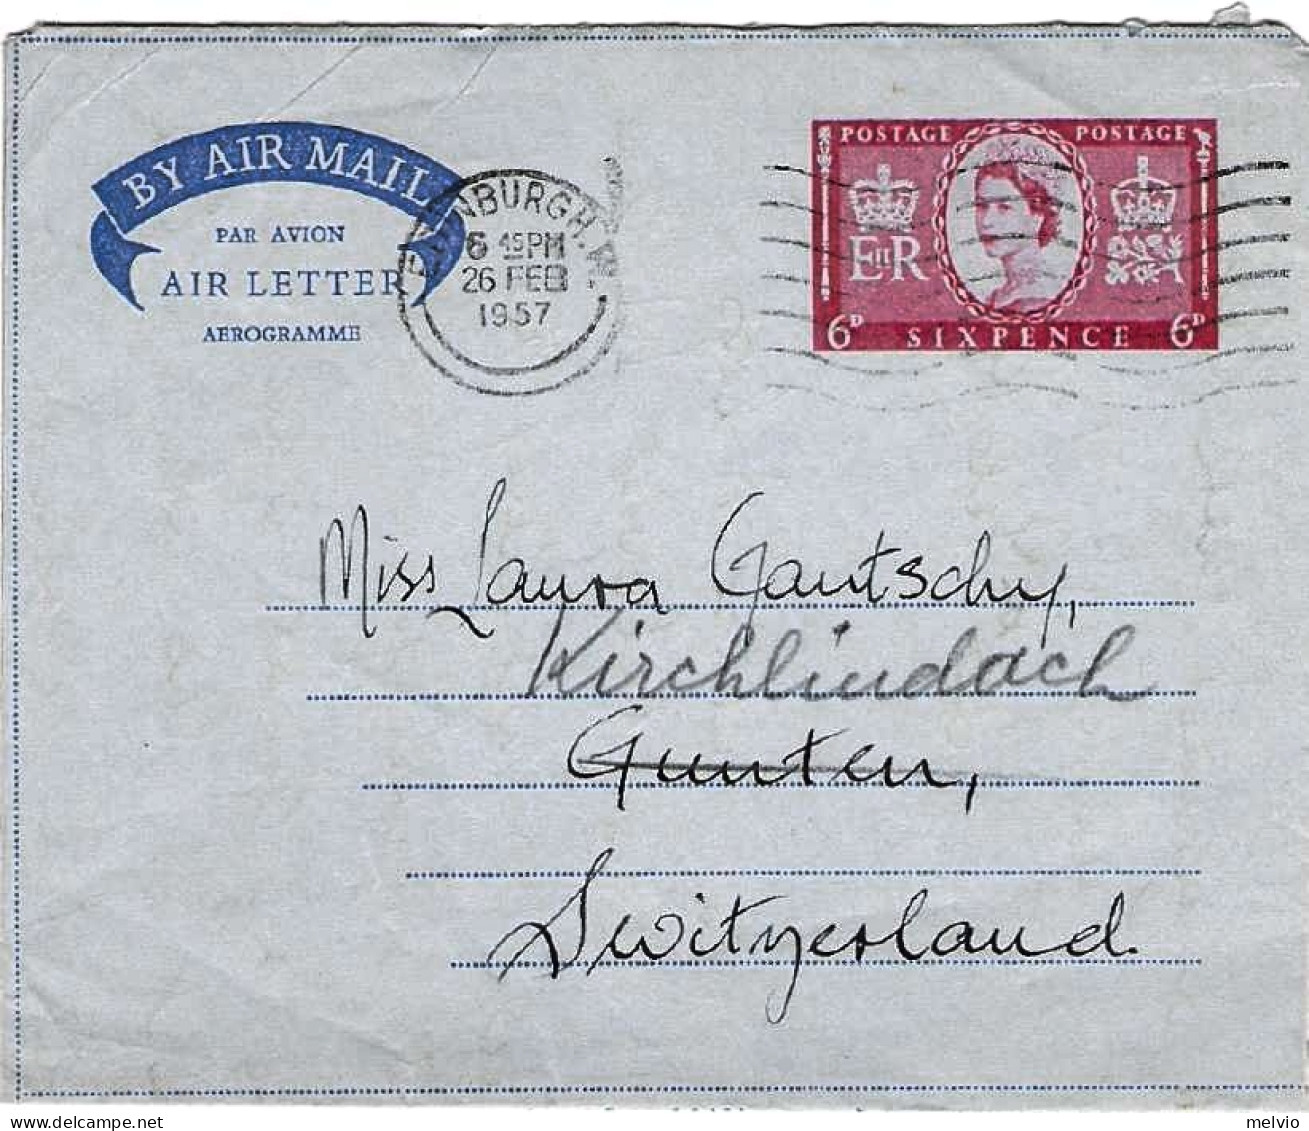 1957-Gran Bretagna Diretta In Svizzera Al Verso Bollo D'arrivo Figurato Gunten - Lettres & Documents